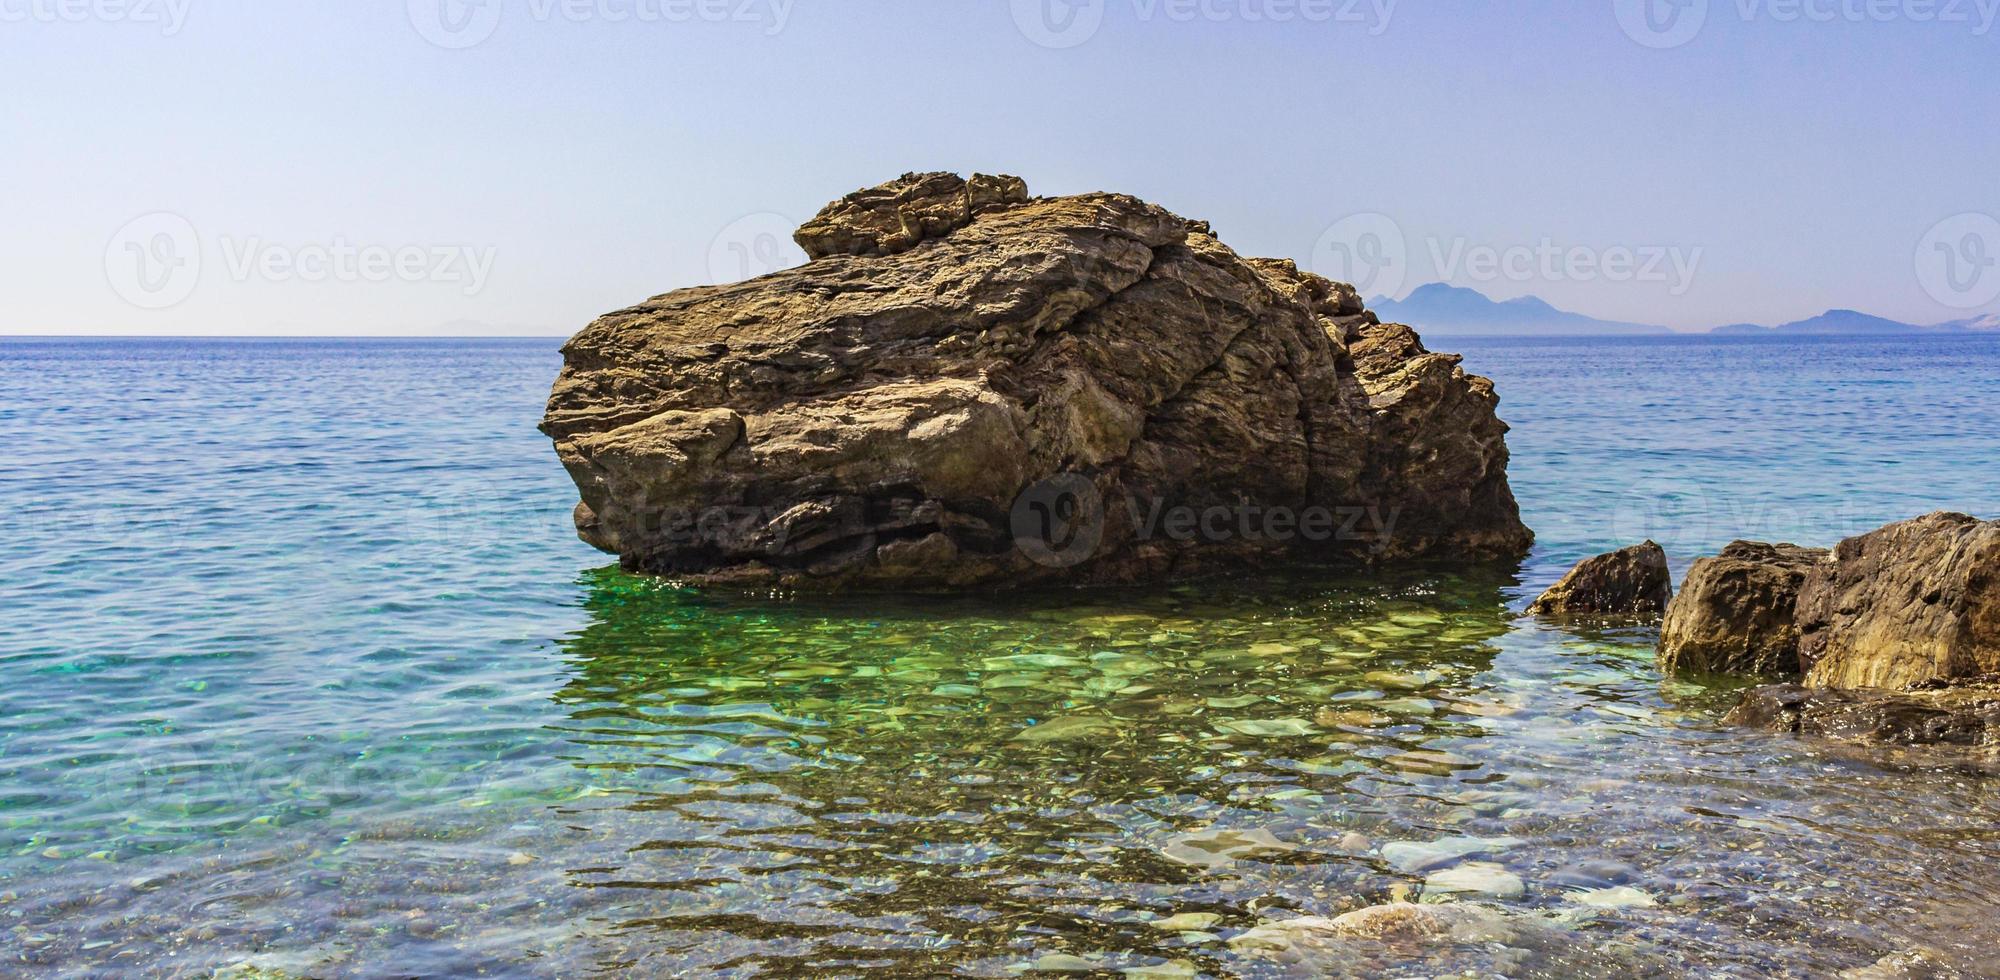 grote rots in natuurlijke kustlandschappen op kos eiland griekenland. foto